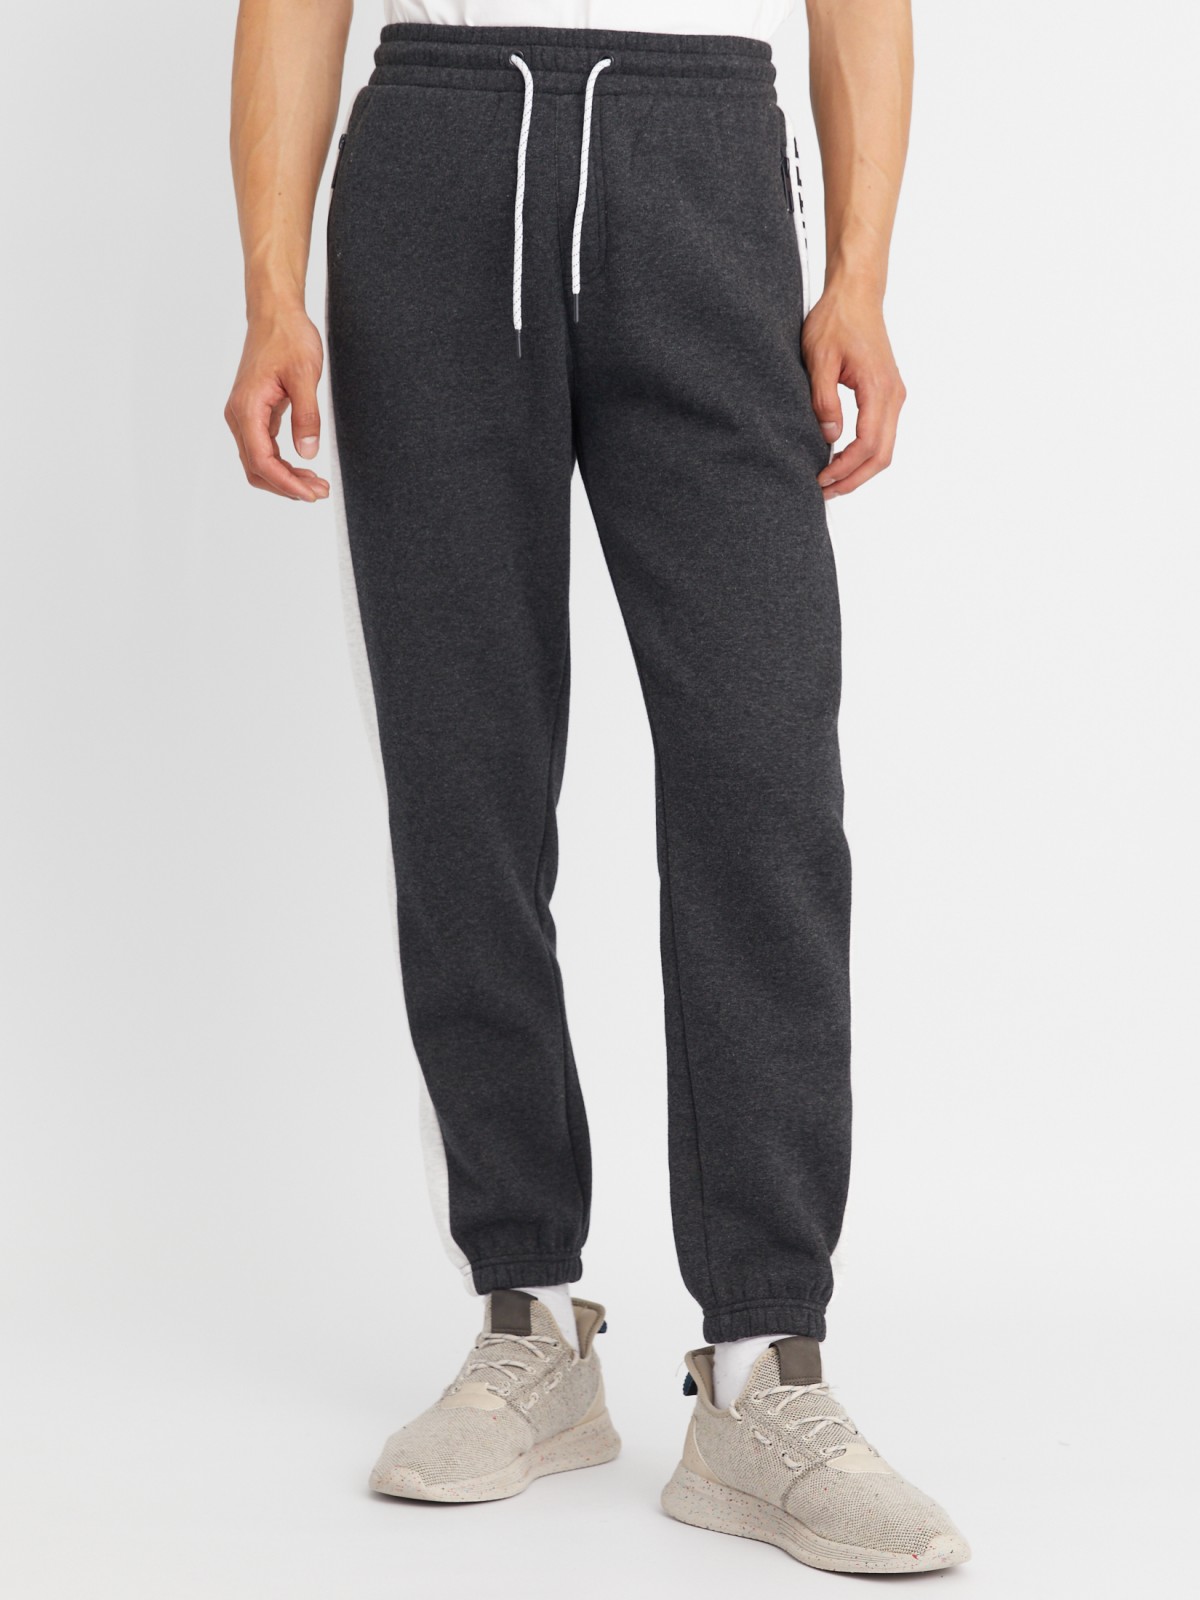 Утеплённые трикотажные брюки-джоггеры в спортивном стиле с лампасами zolla 213337660013, цвет темно-серый, размер M - фото 2